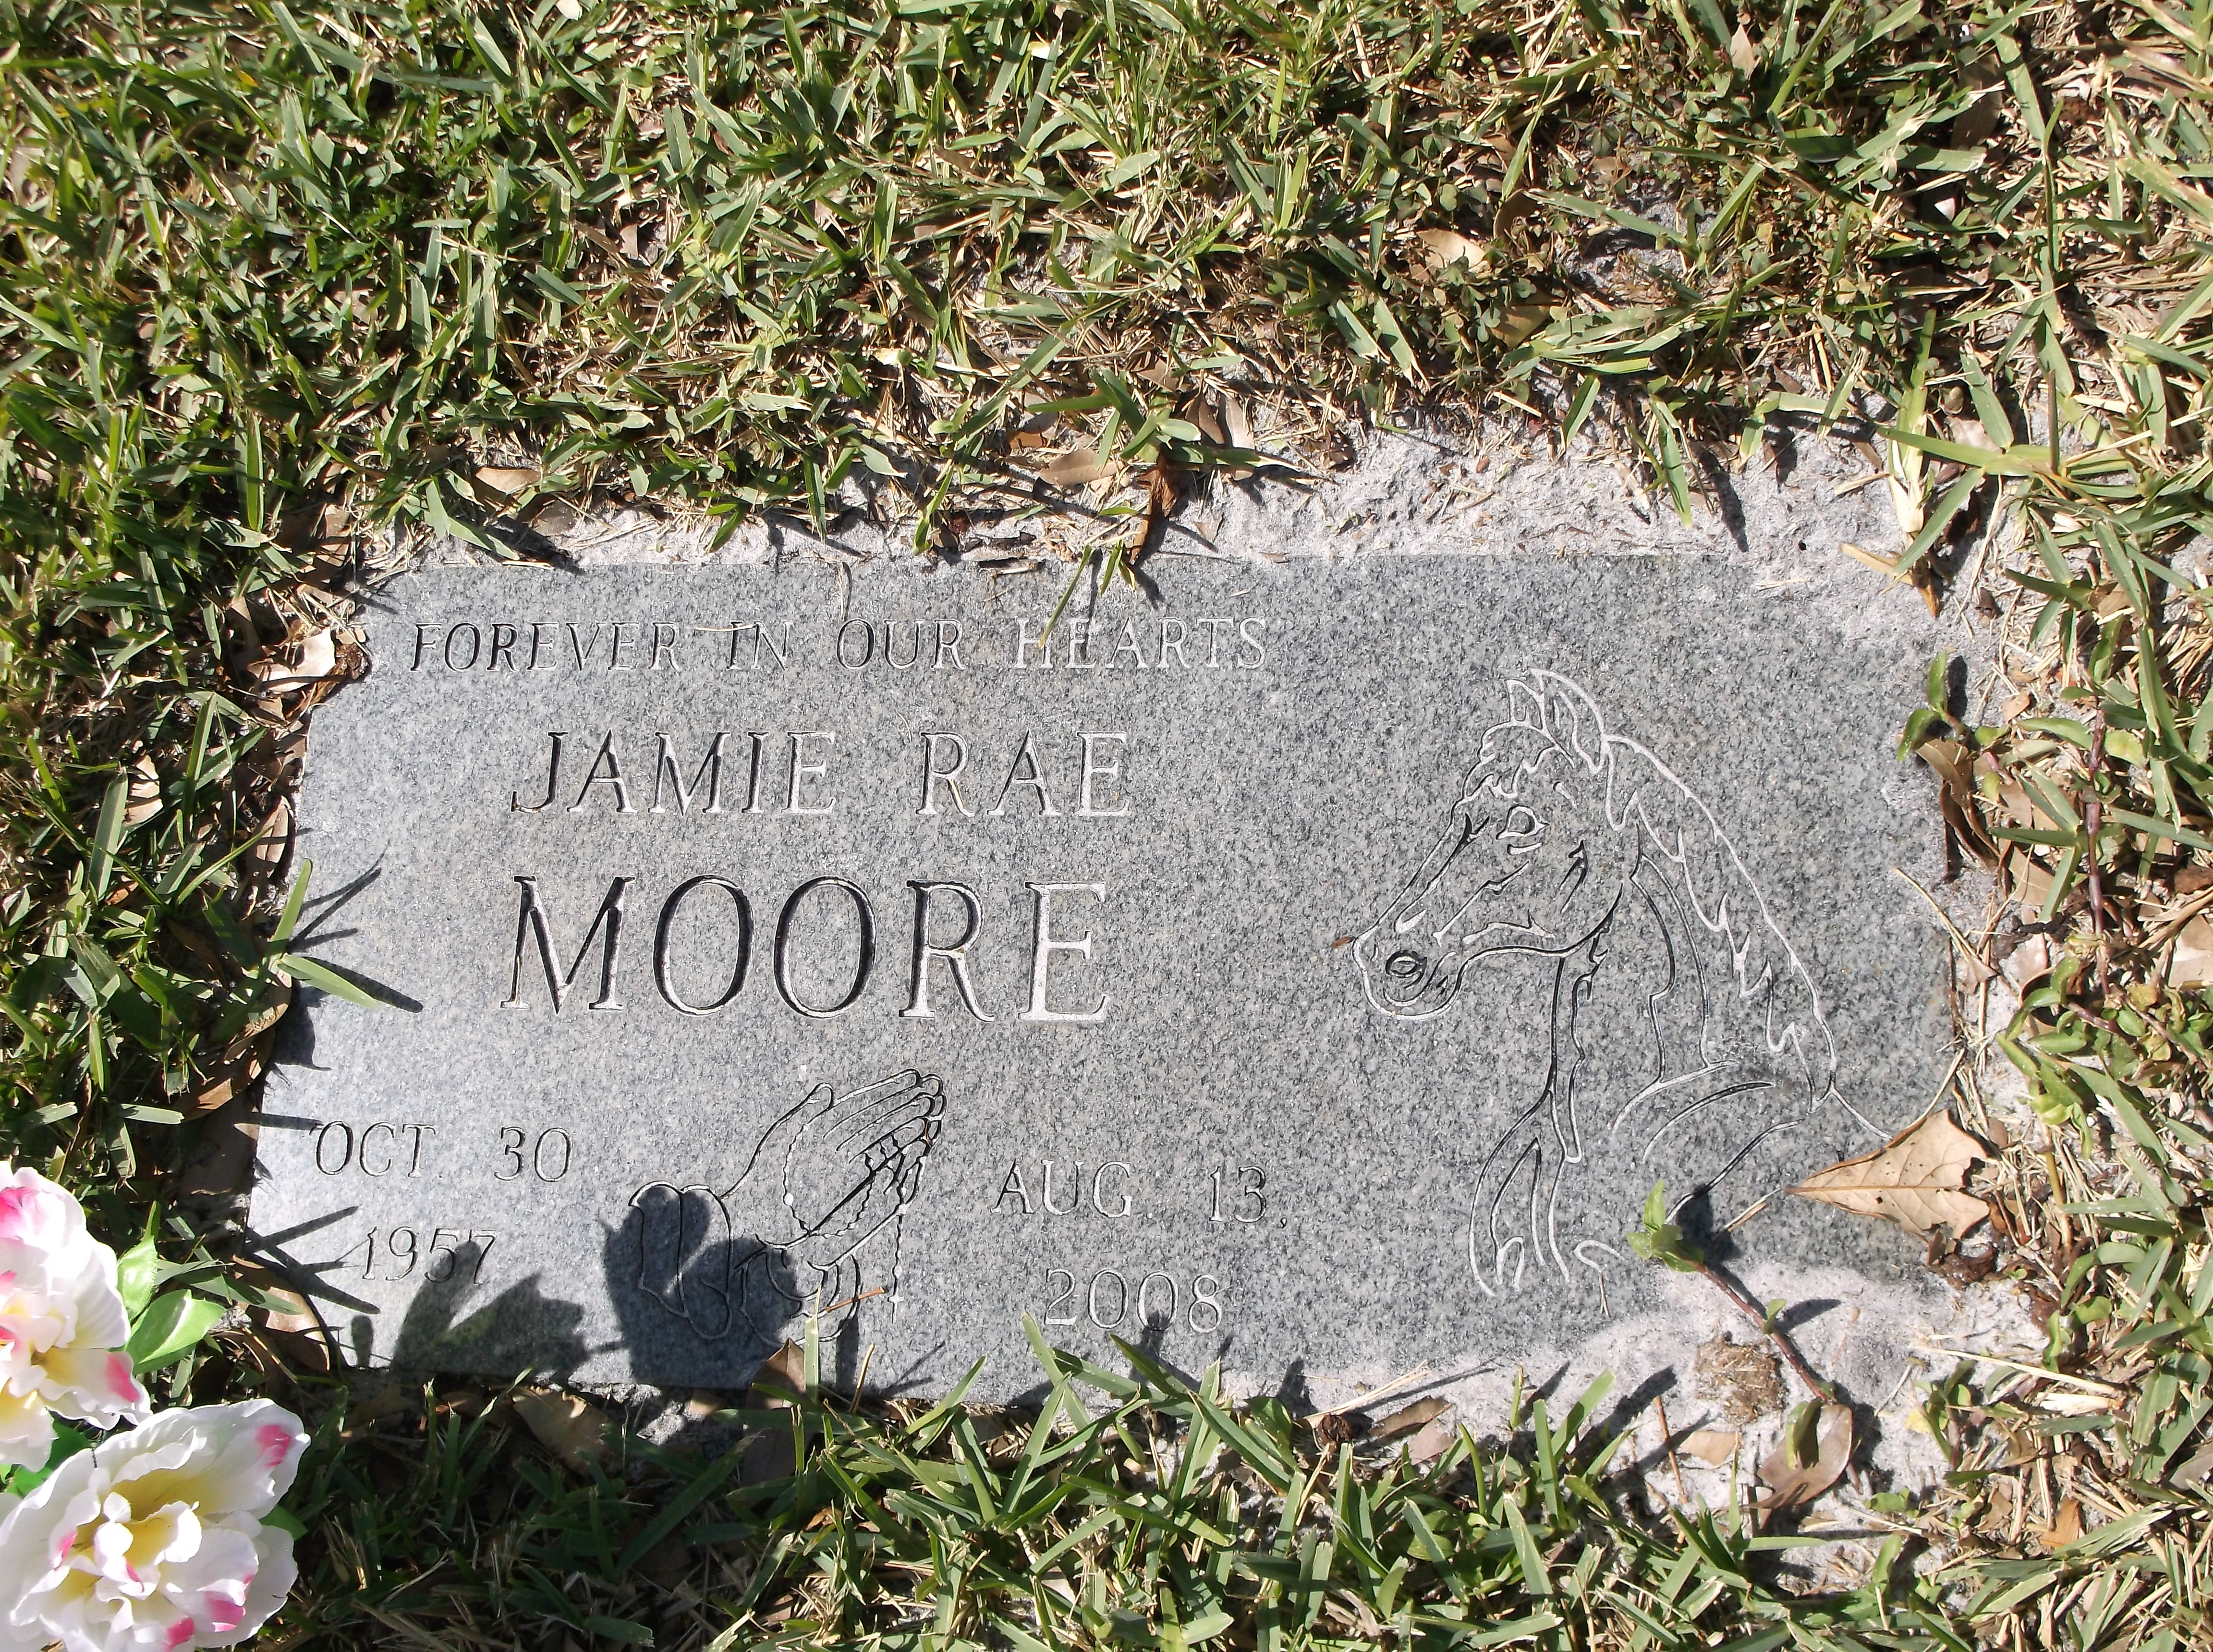 Jamie Rae Moore